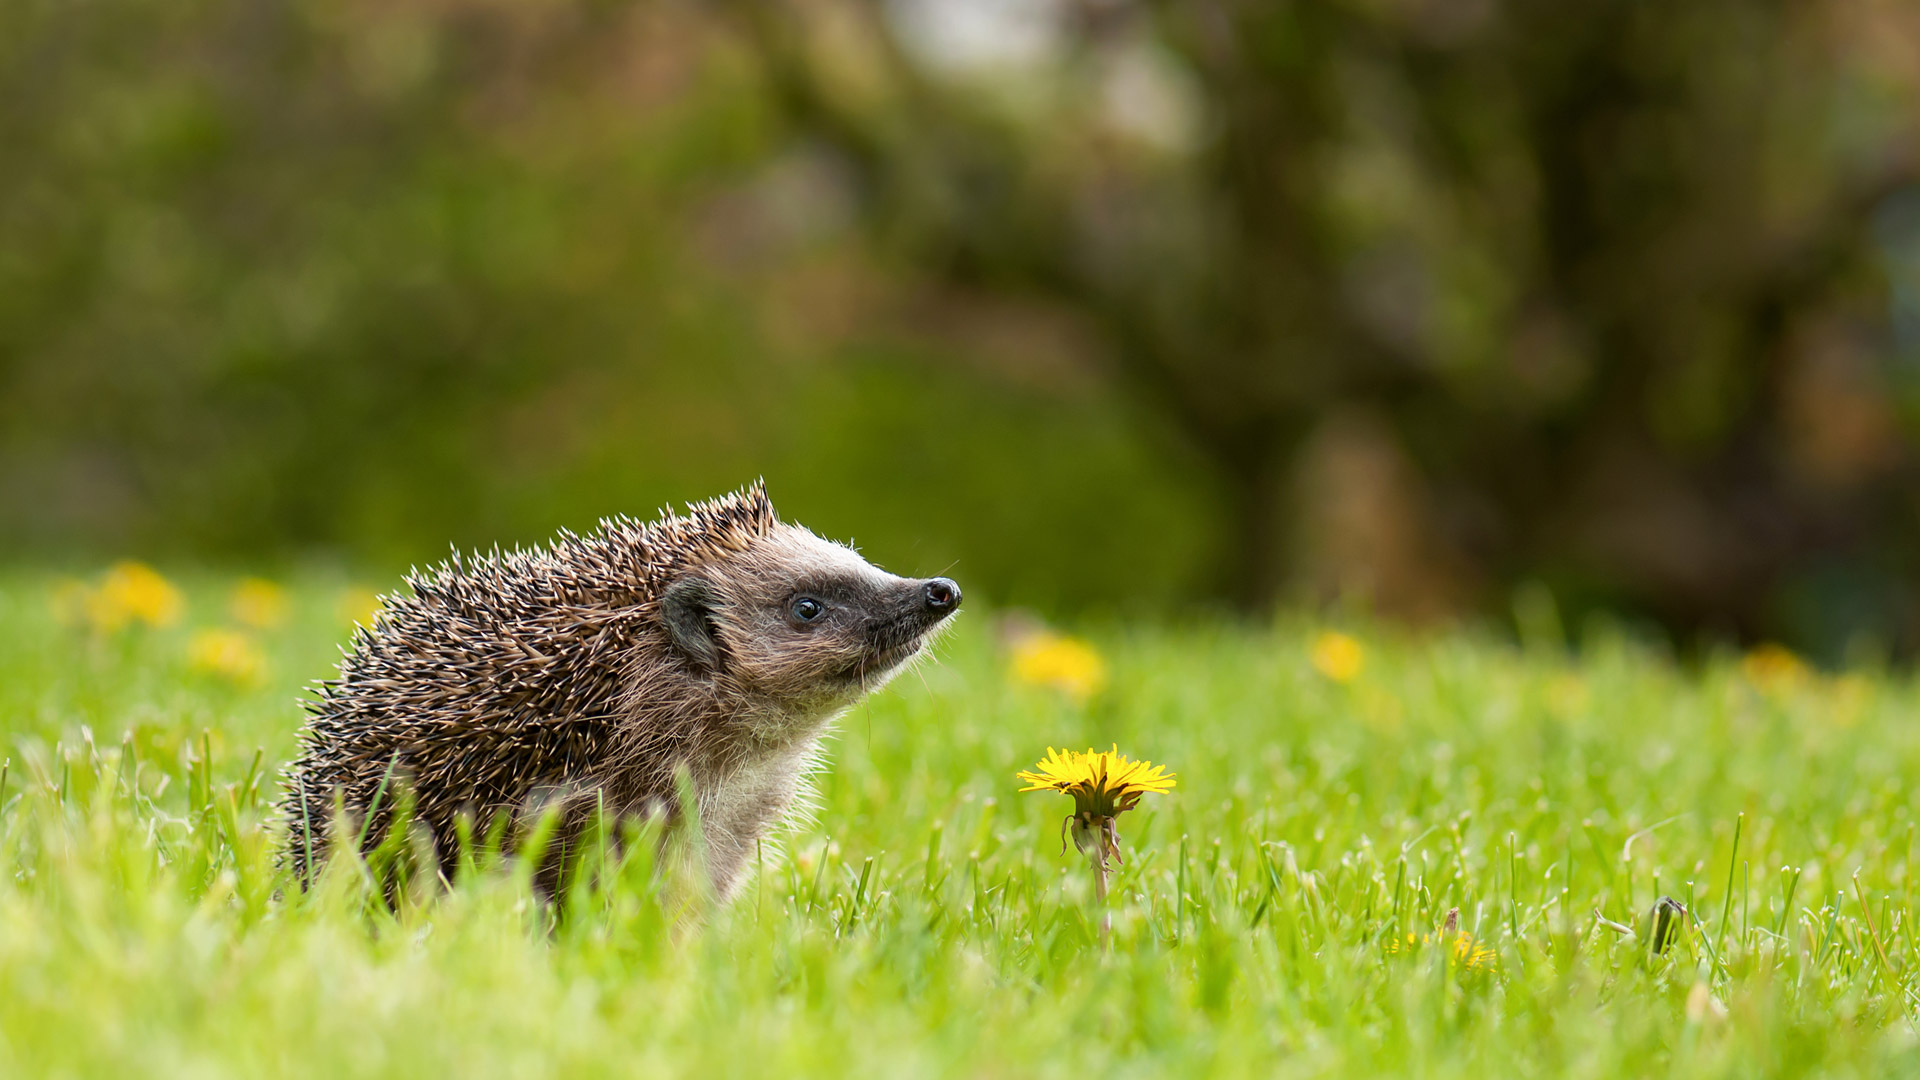 European hedgehog in a garden with dandelions